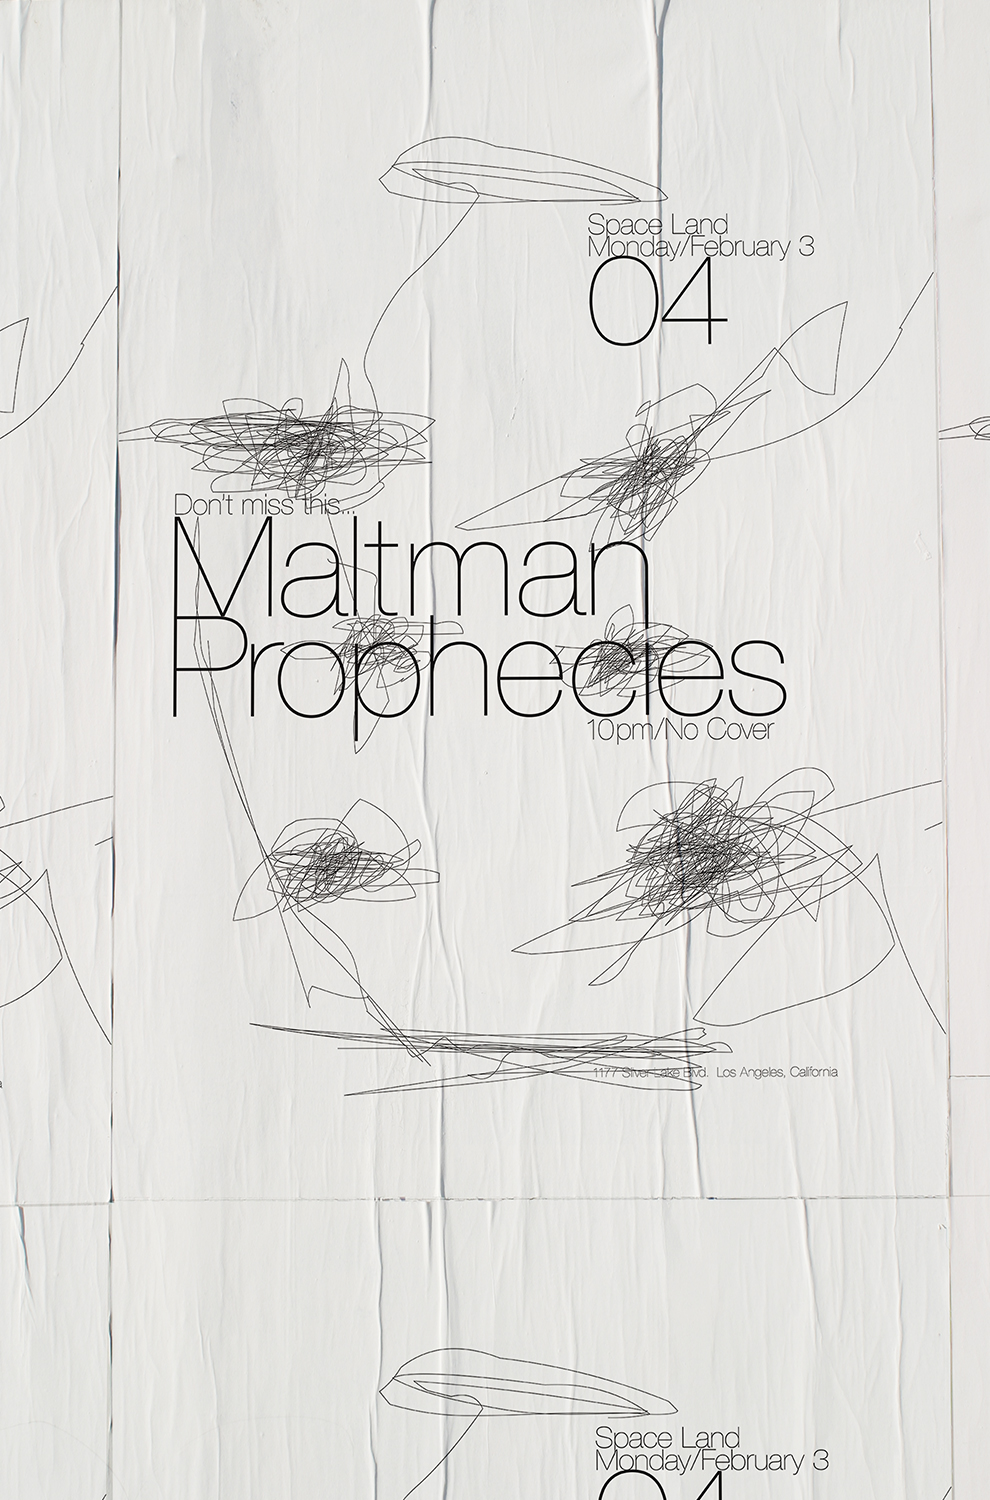 Maltman_Prophecies_Poster_v2